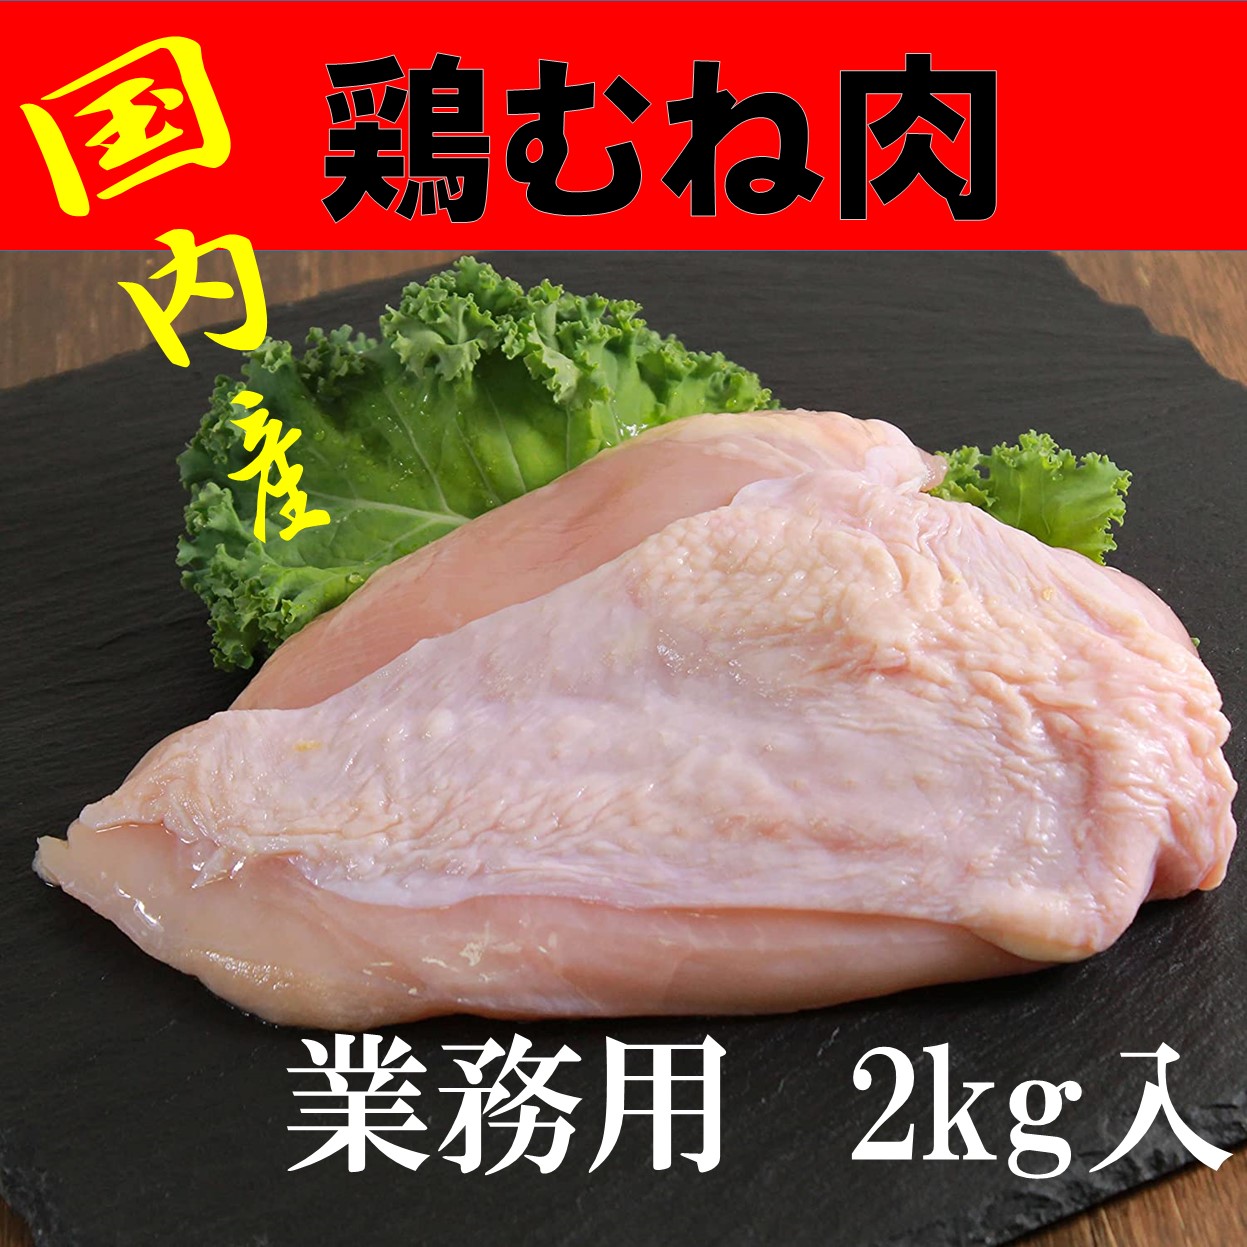 楽天市場 国産鶏肉 鶏むね肉 2kg 冷凍ブロッコリー 500g むね肉 冷凍野菜 筋トレ タンパク質 食材卸ダイヨー